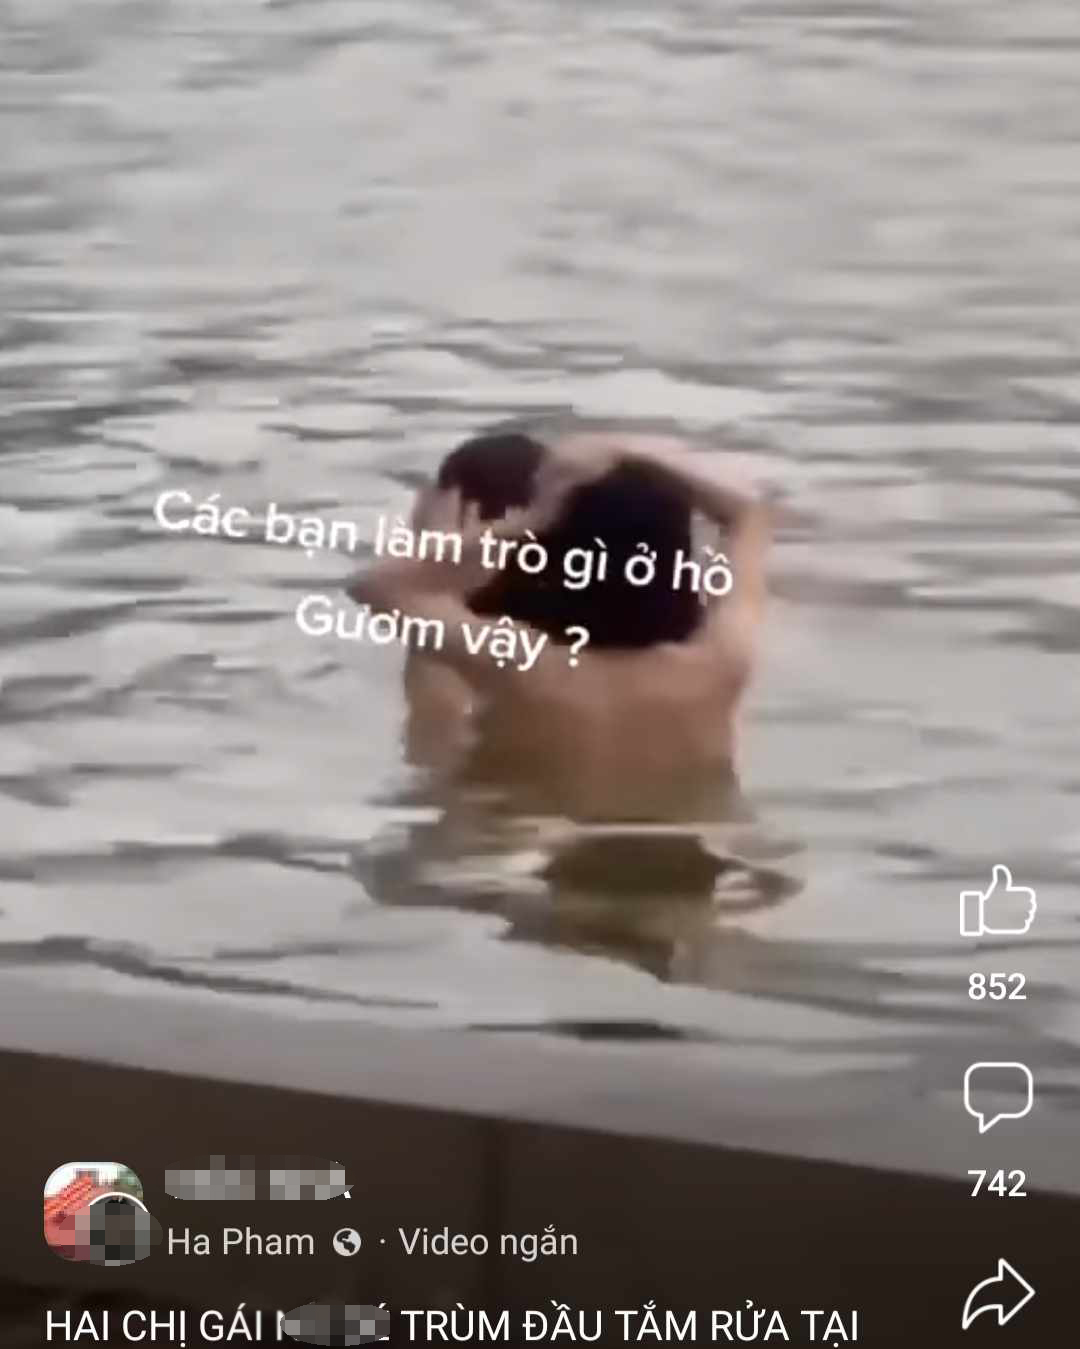 Xác minh clip nghi cắt ghép 2 cô gái tắm ở Hồ Gươm gây xôn xao - 1